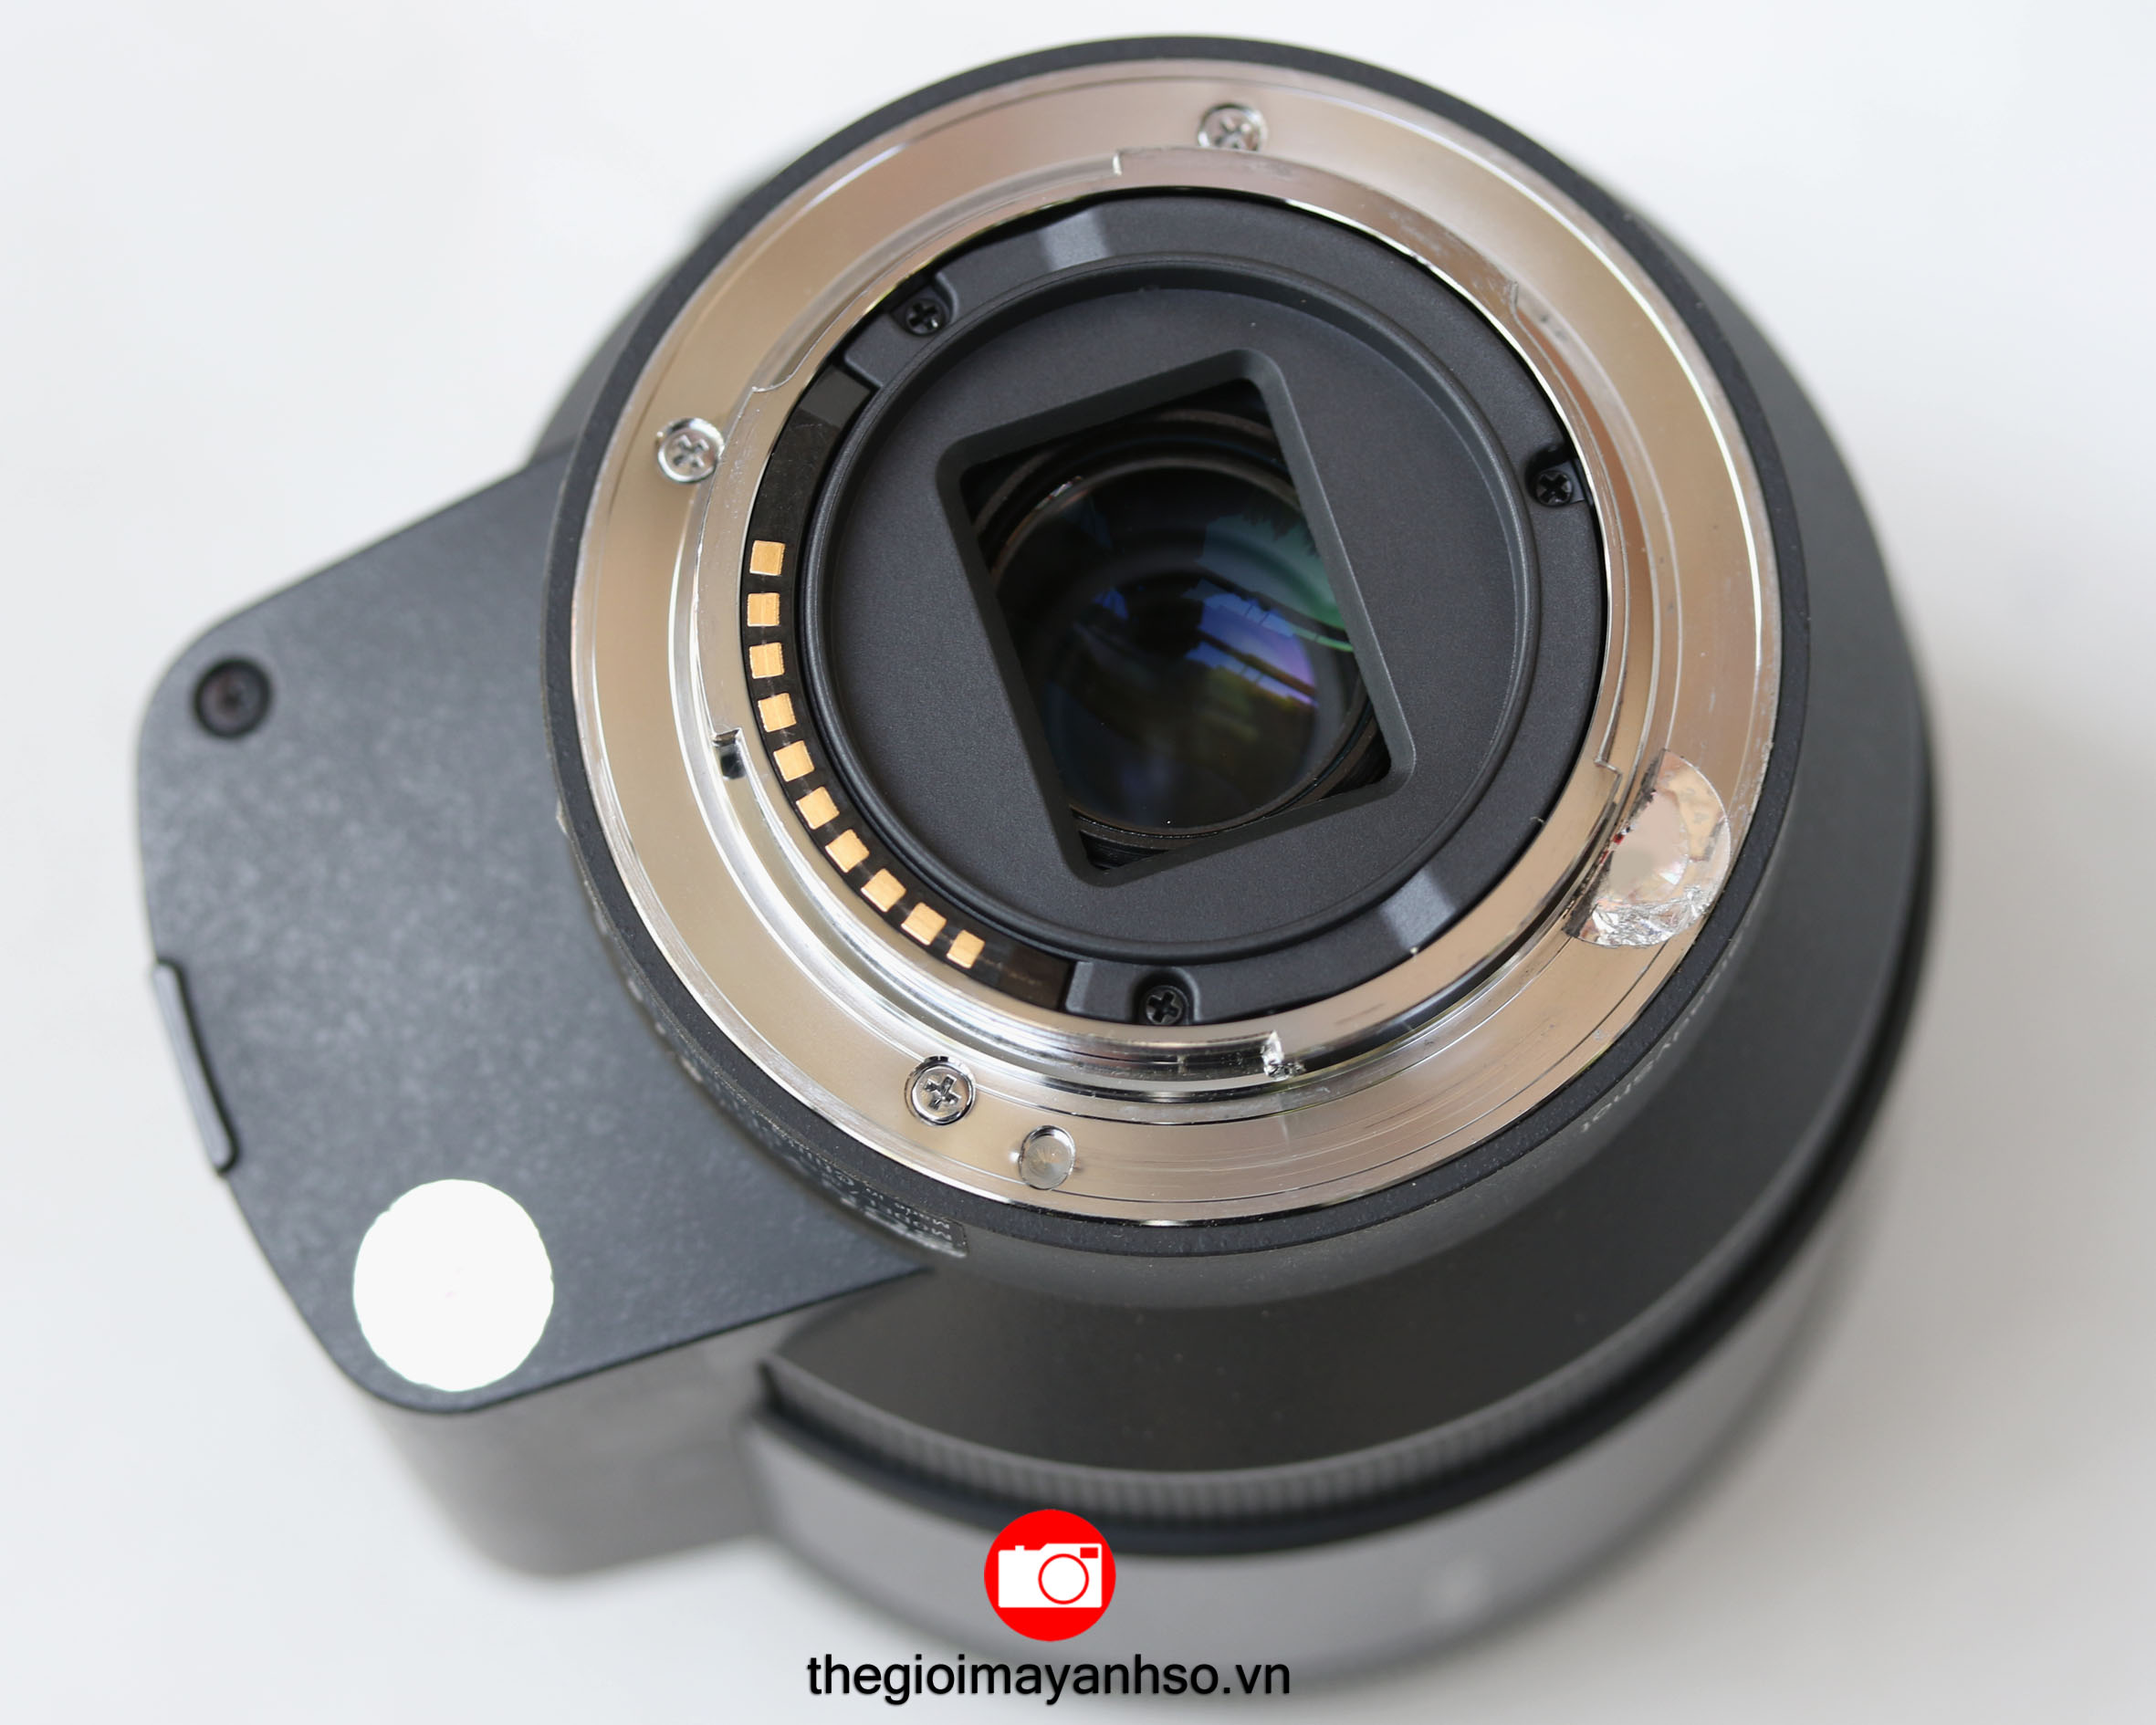 Sony E PZ 18-200mm f/3.5-6.3 OSS Lens